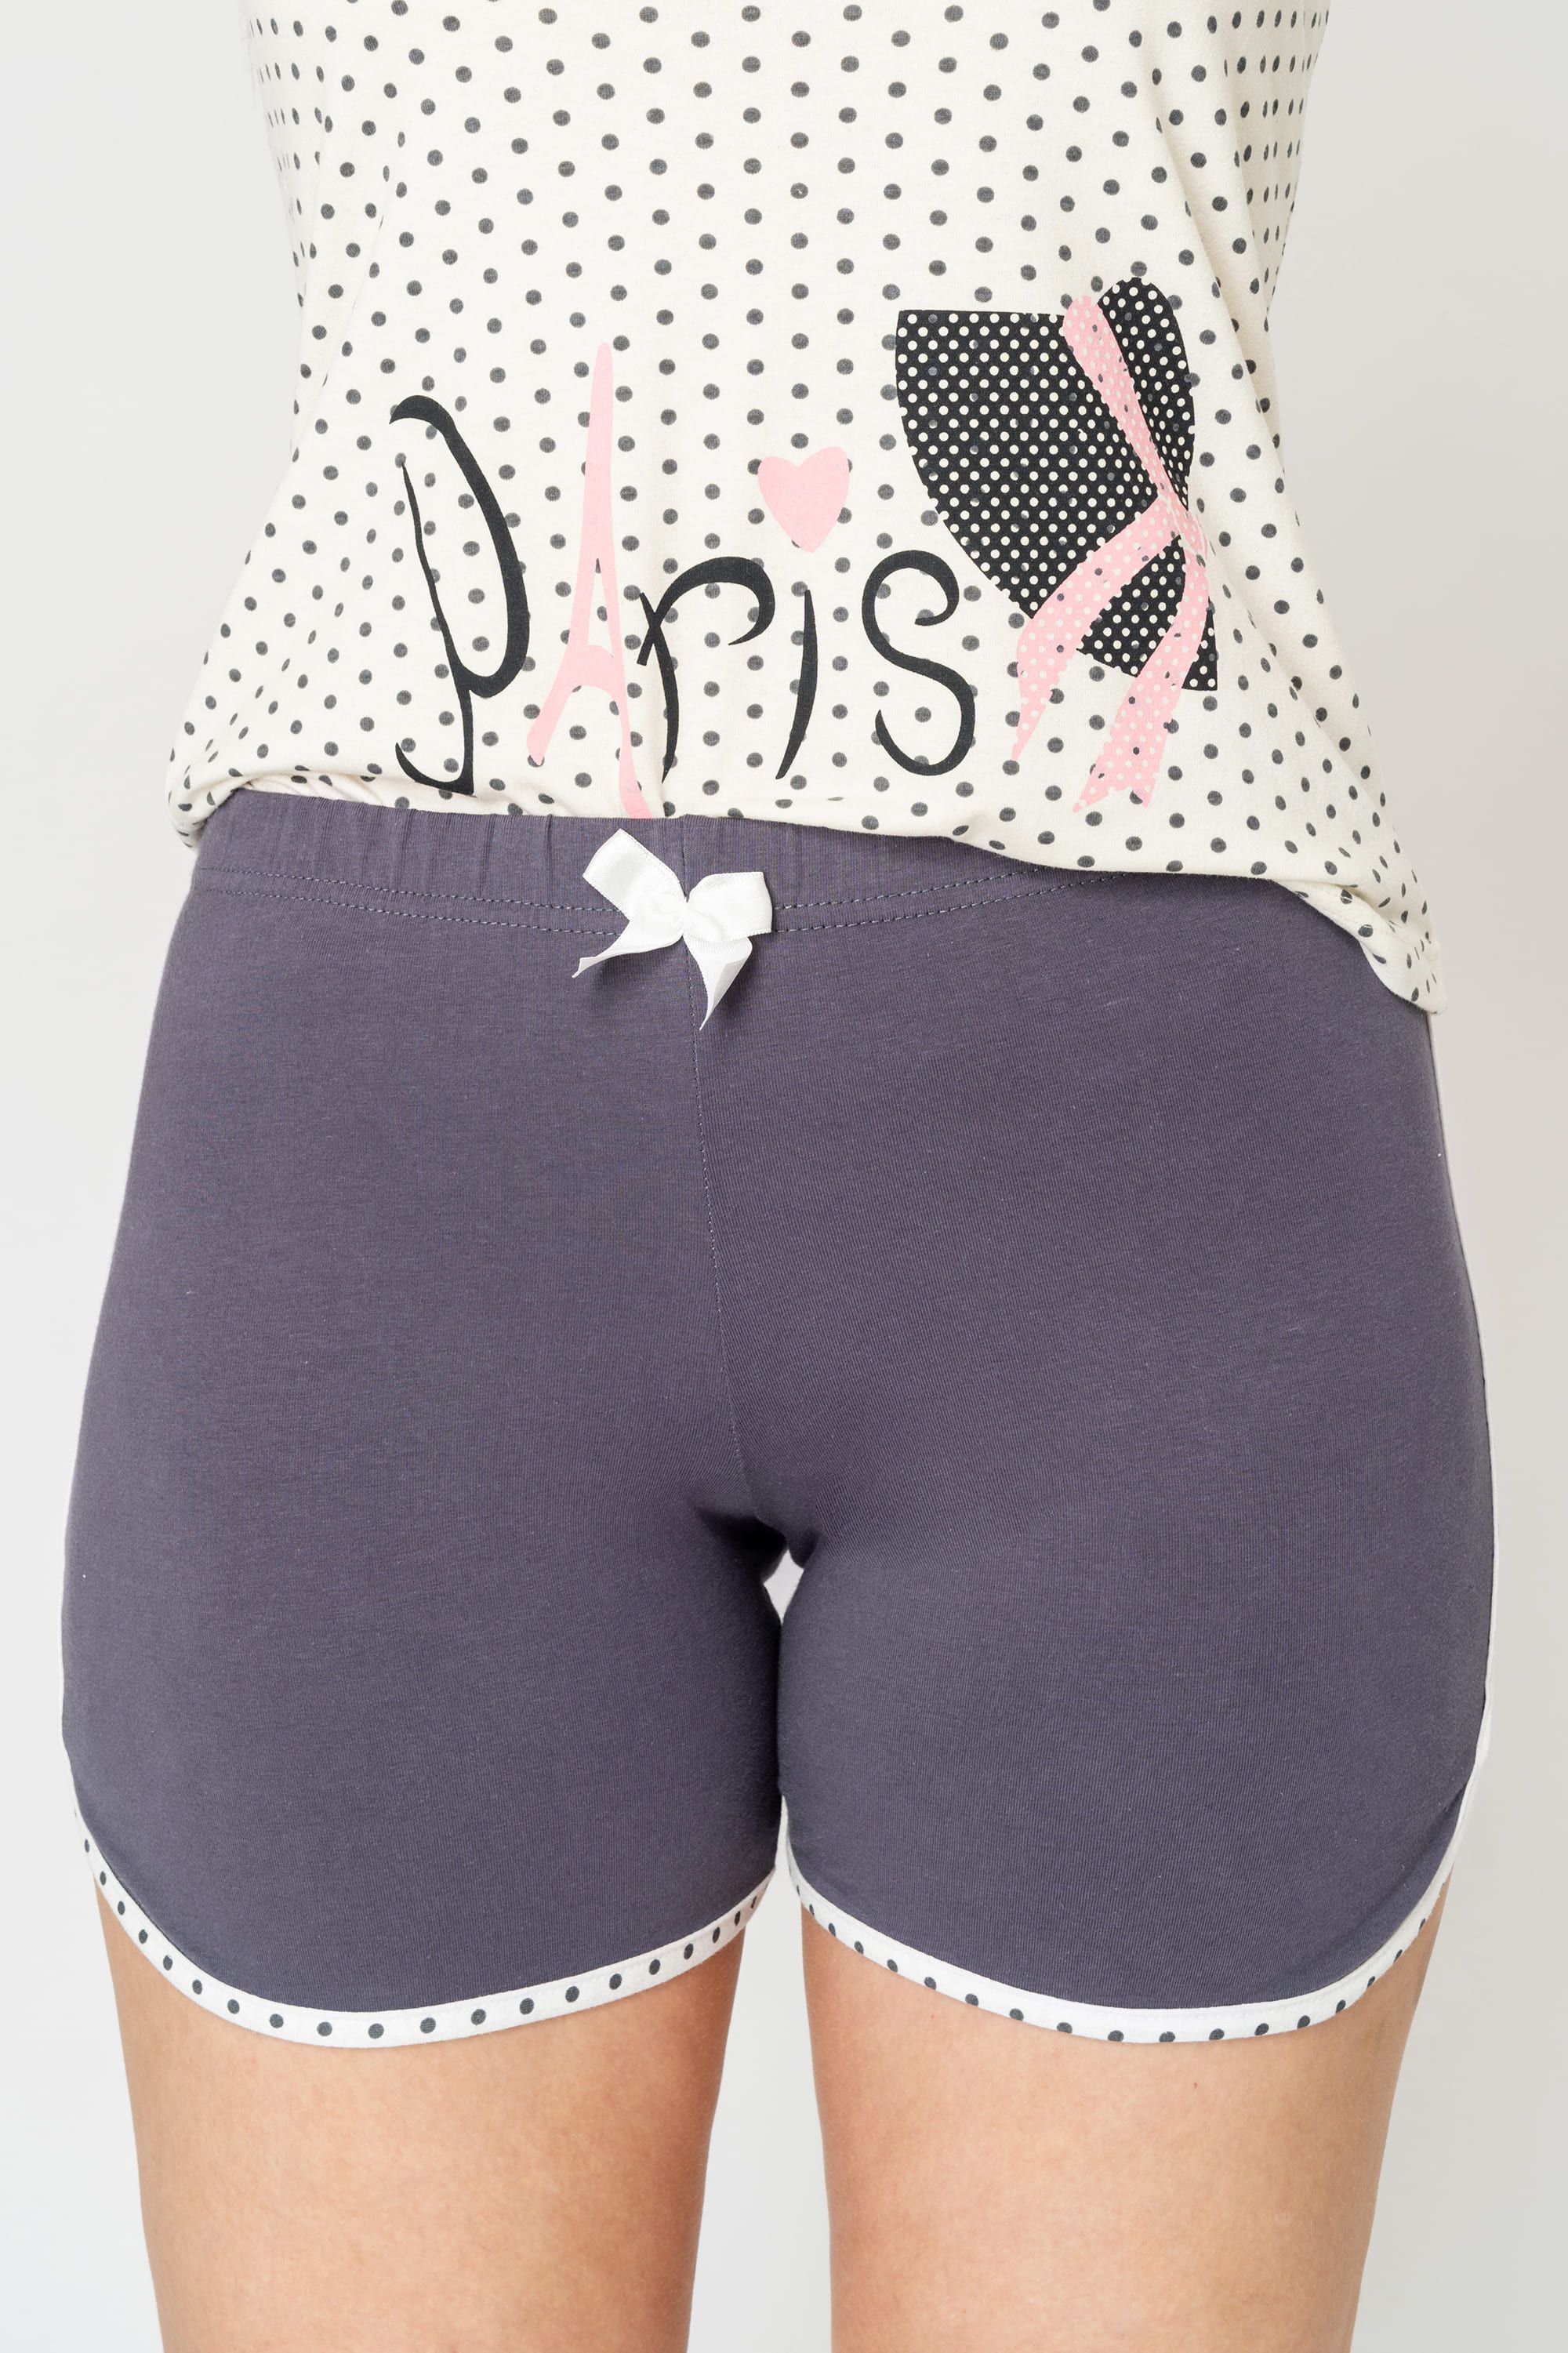 Комплект женский (майка,шорты пижамные) MISS VICTO 11800 11800